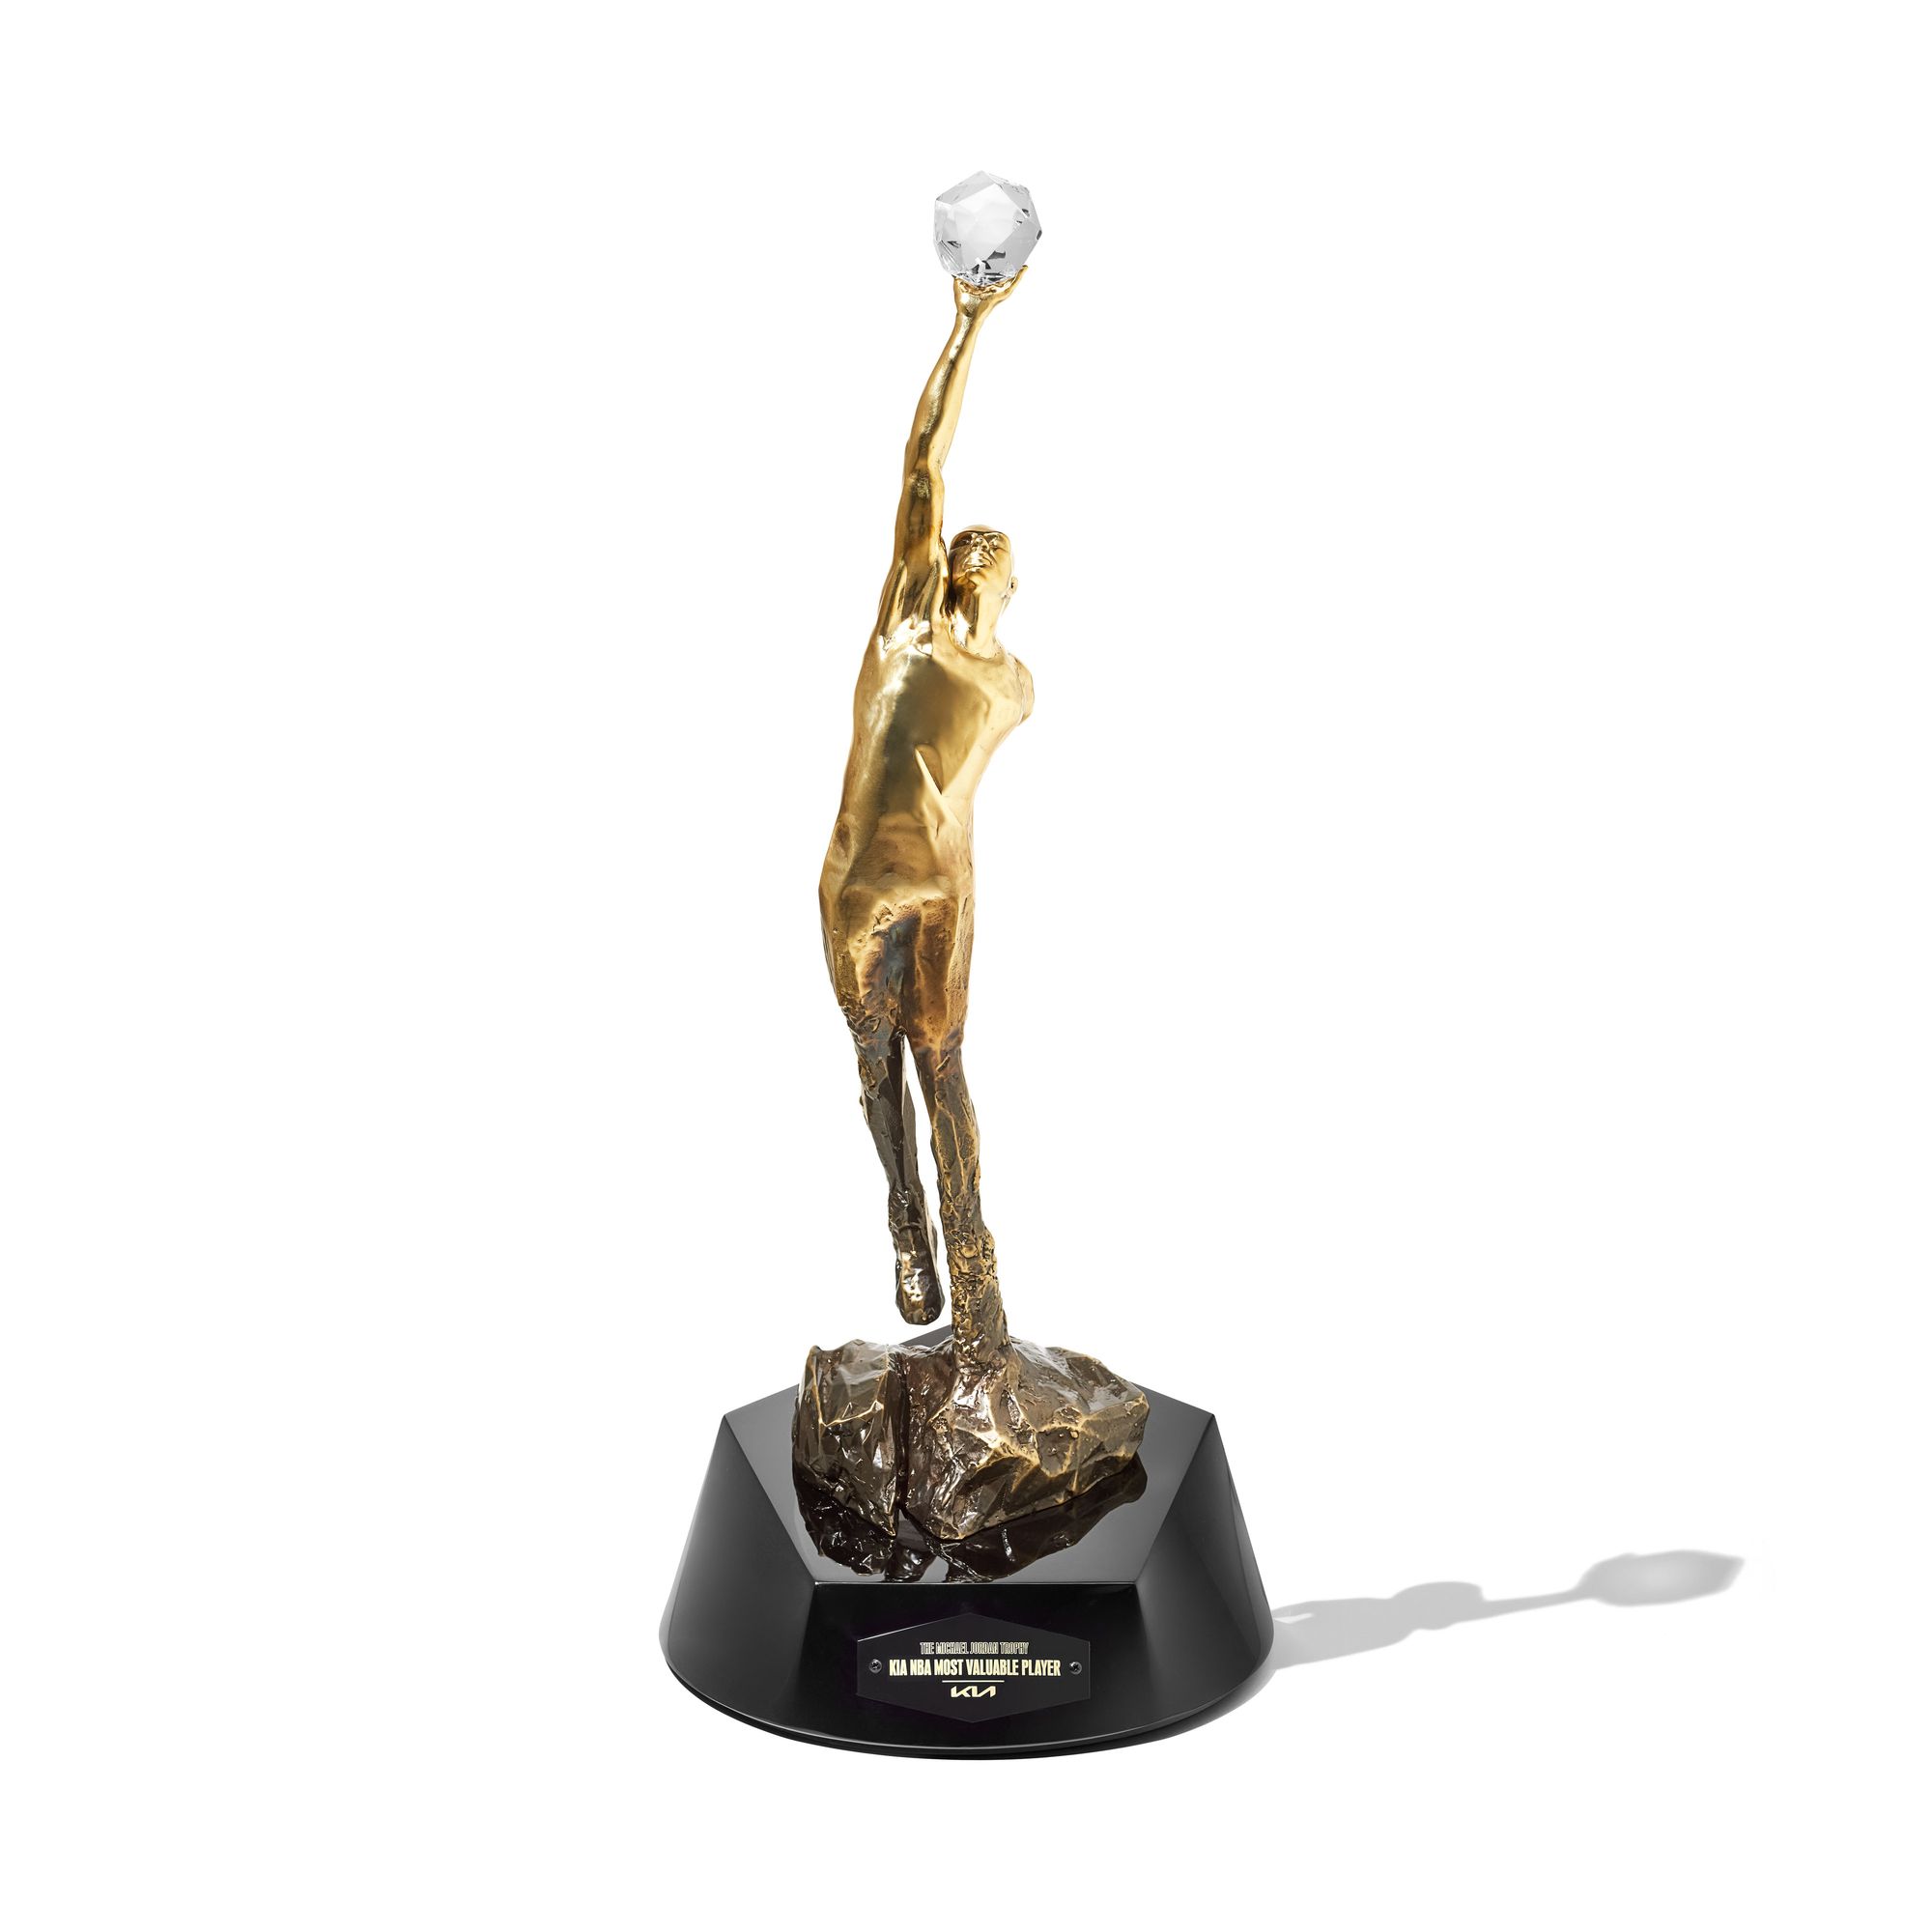 NBA MVP award renamed in honor of Michael Jordan